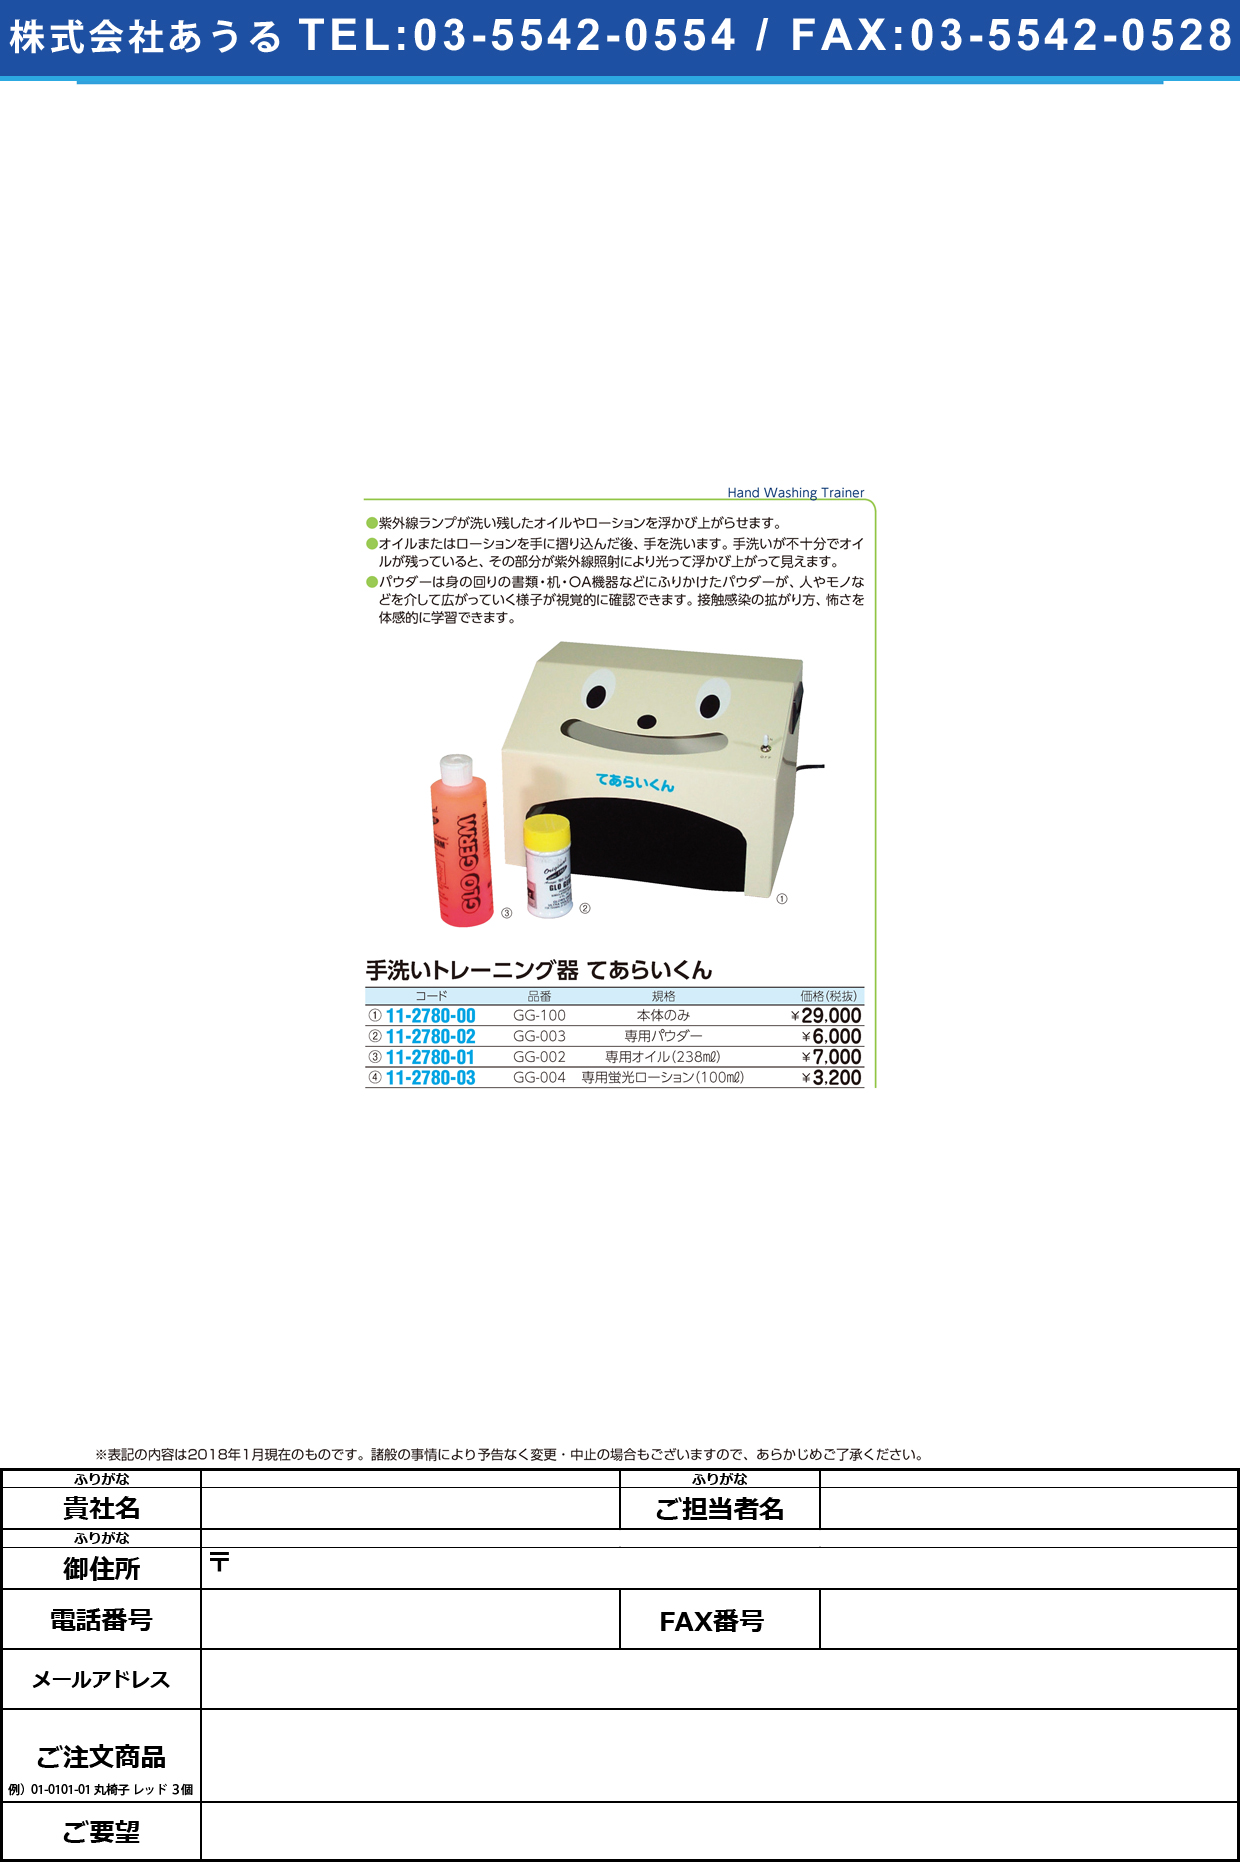 (11-2780-03)手洗いトレーニング器用蛍光ローション GG-004(100ML) ﾃｱﾗｲﾄﾚｰﾆﾝｸﾞｹｲｺｳﾛｰｼｮﾝ【1本単位】【2019年カタログ商品】